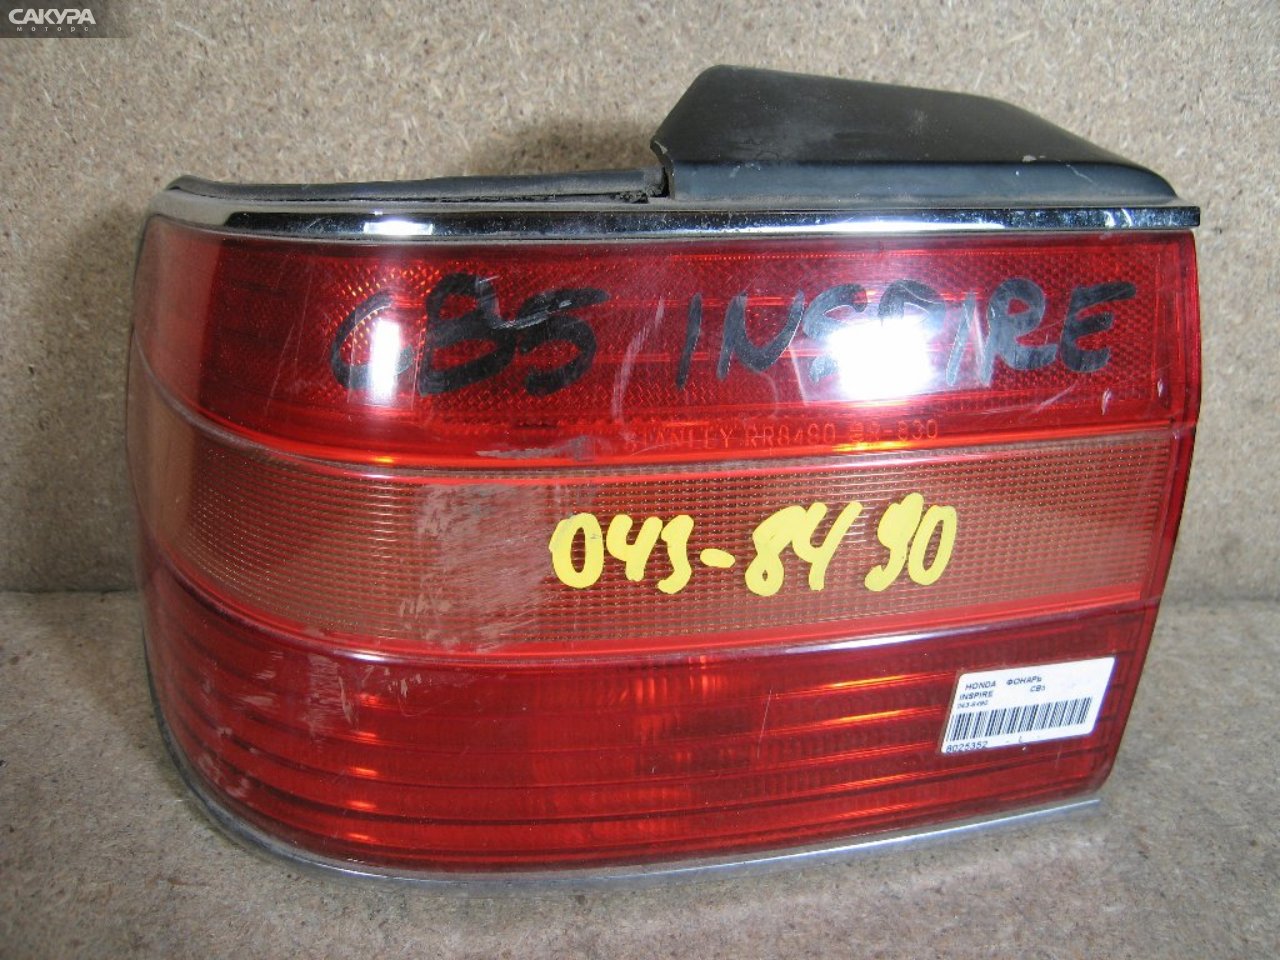 Фонарь стоп-сигнала левый Honda Inspire CB5 043-8490: купить в Сакура Абакан.